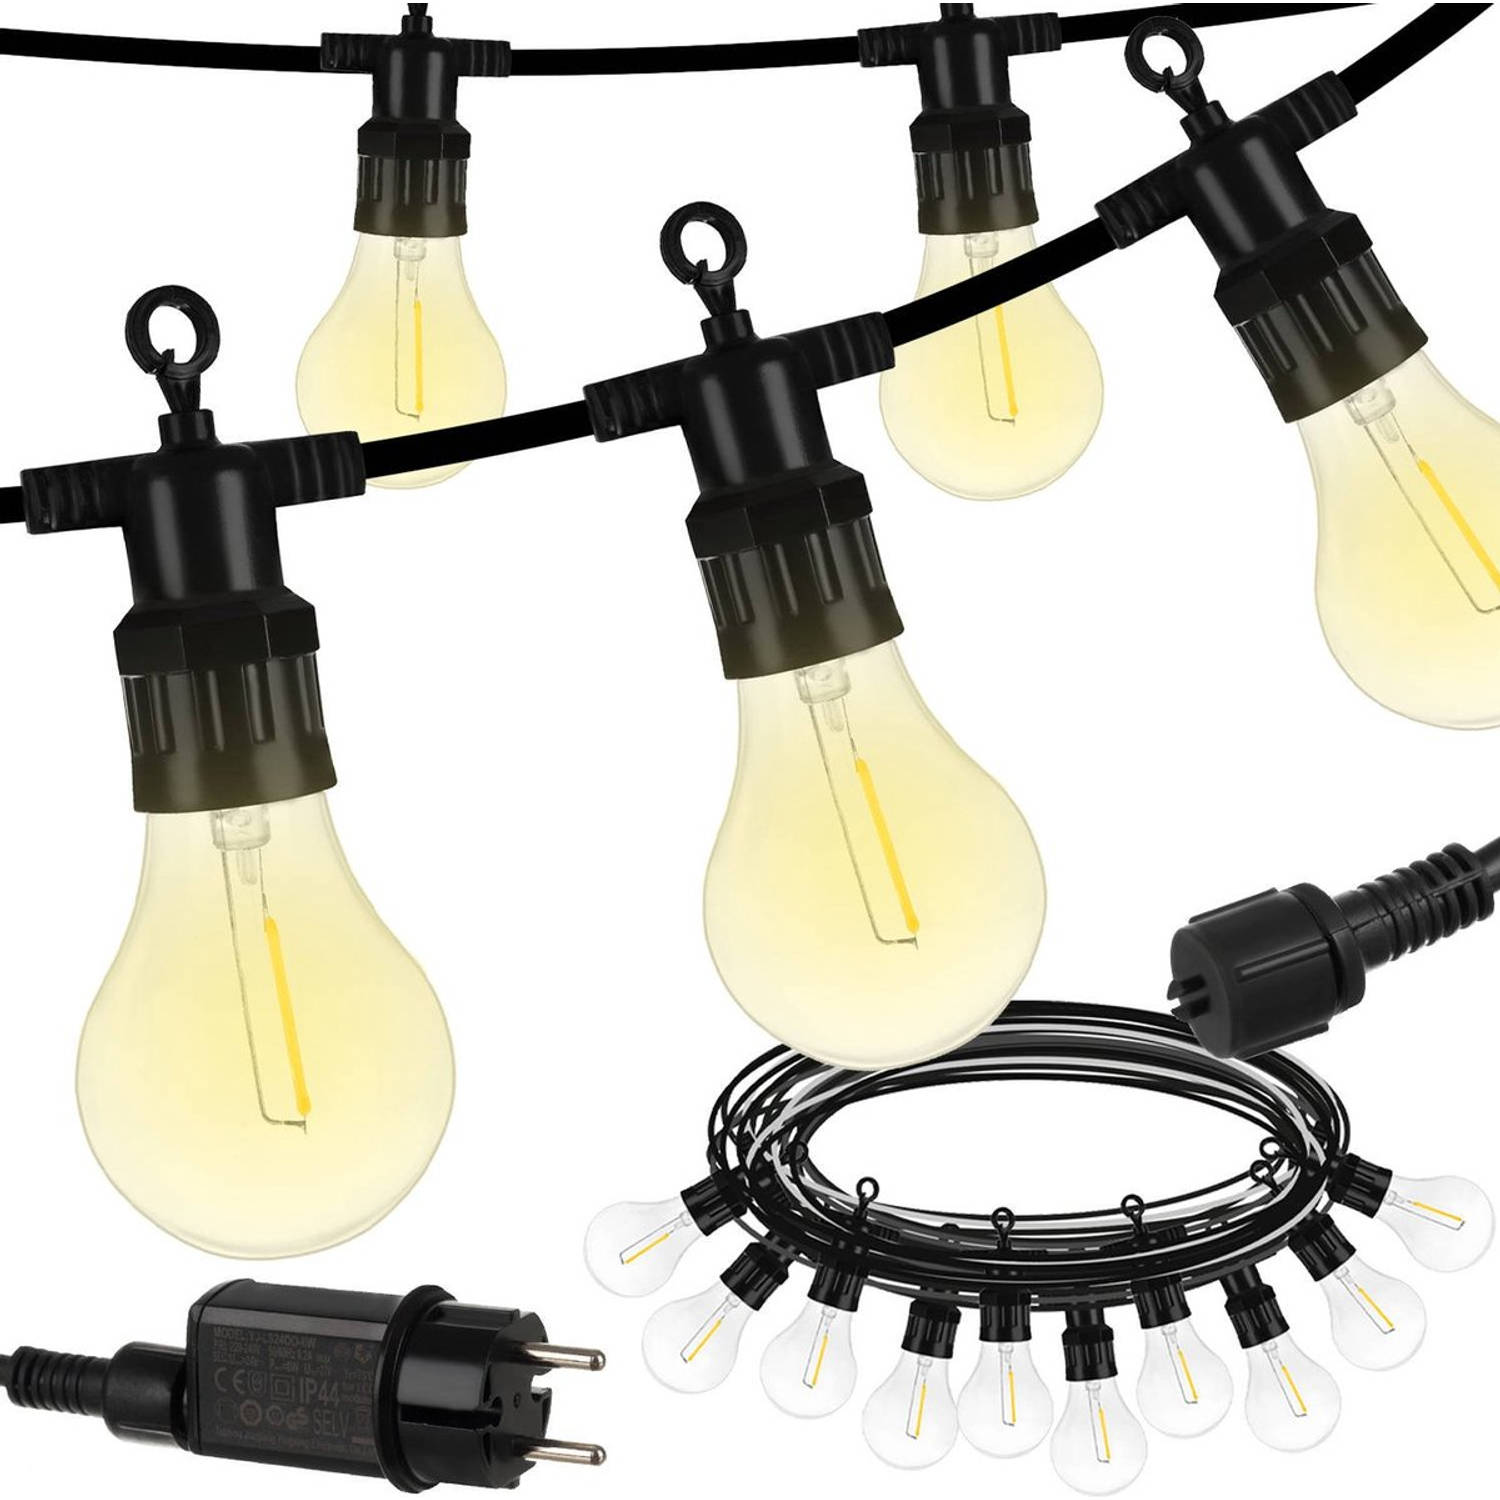 Lichtsnoer - Tuinverlichting - Lichtslinger - 5M - Waterdicht - E27 Fittingen - Prikkabel - Warm Wit - Incl. 10 LED Lampen - Voor Binnen En Buiten